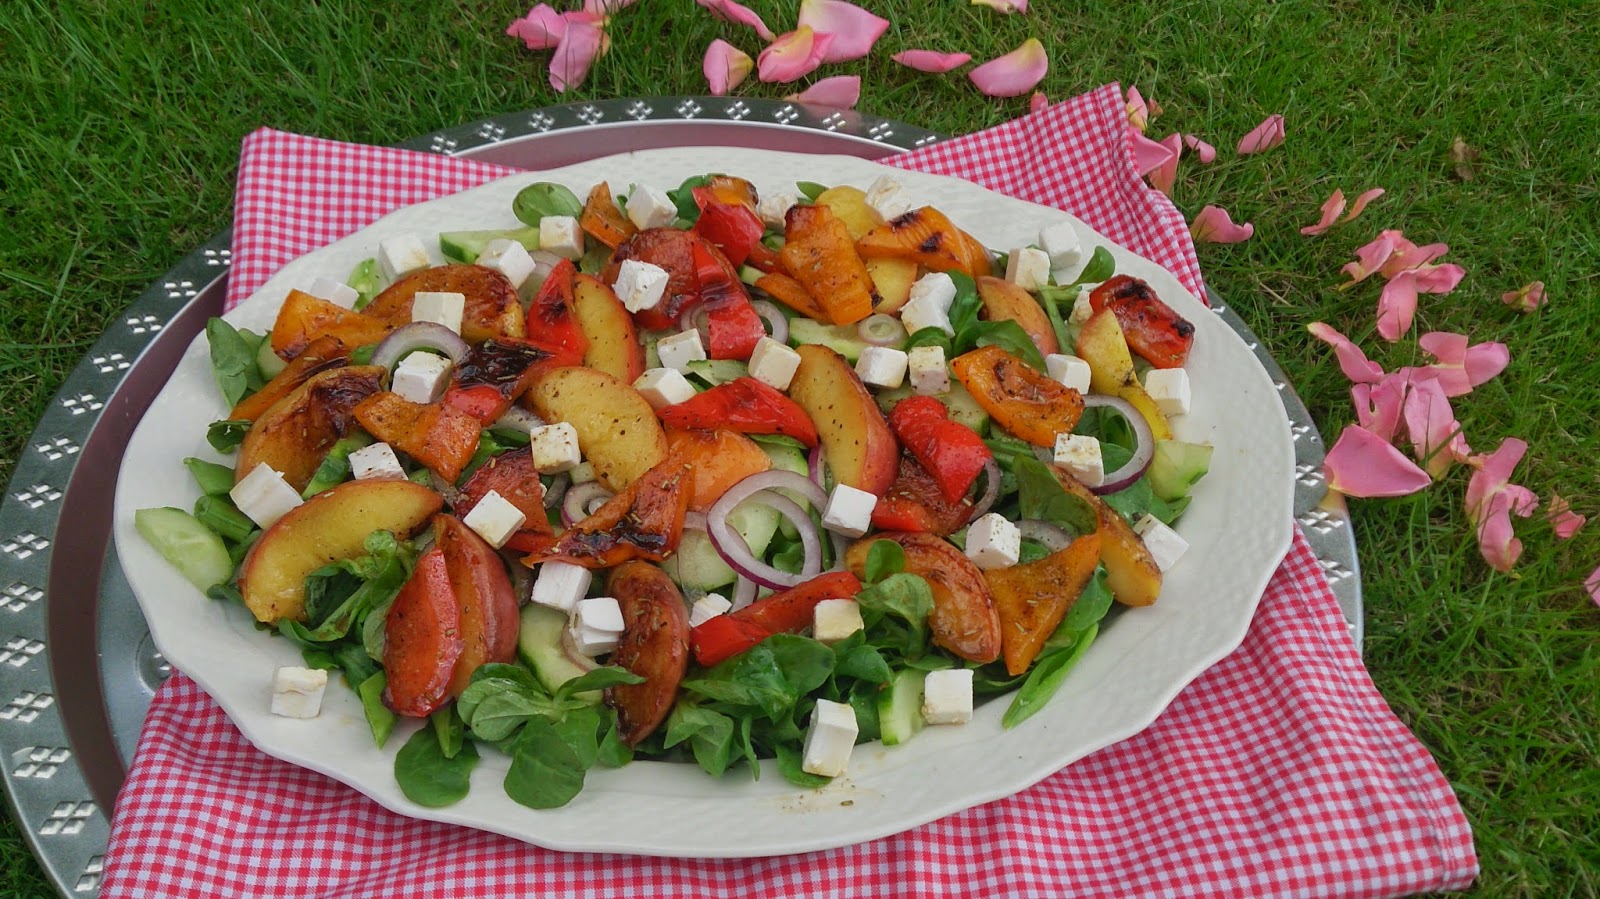 Saras madunivers: Grillet laks og salat grillede ferskner, peberfrugt og feta serveret med stegte kartofler.